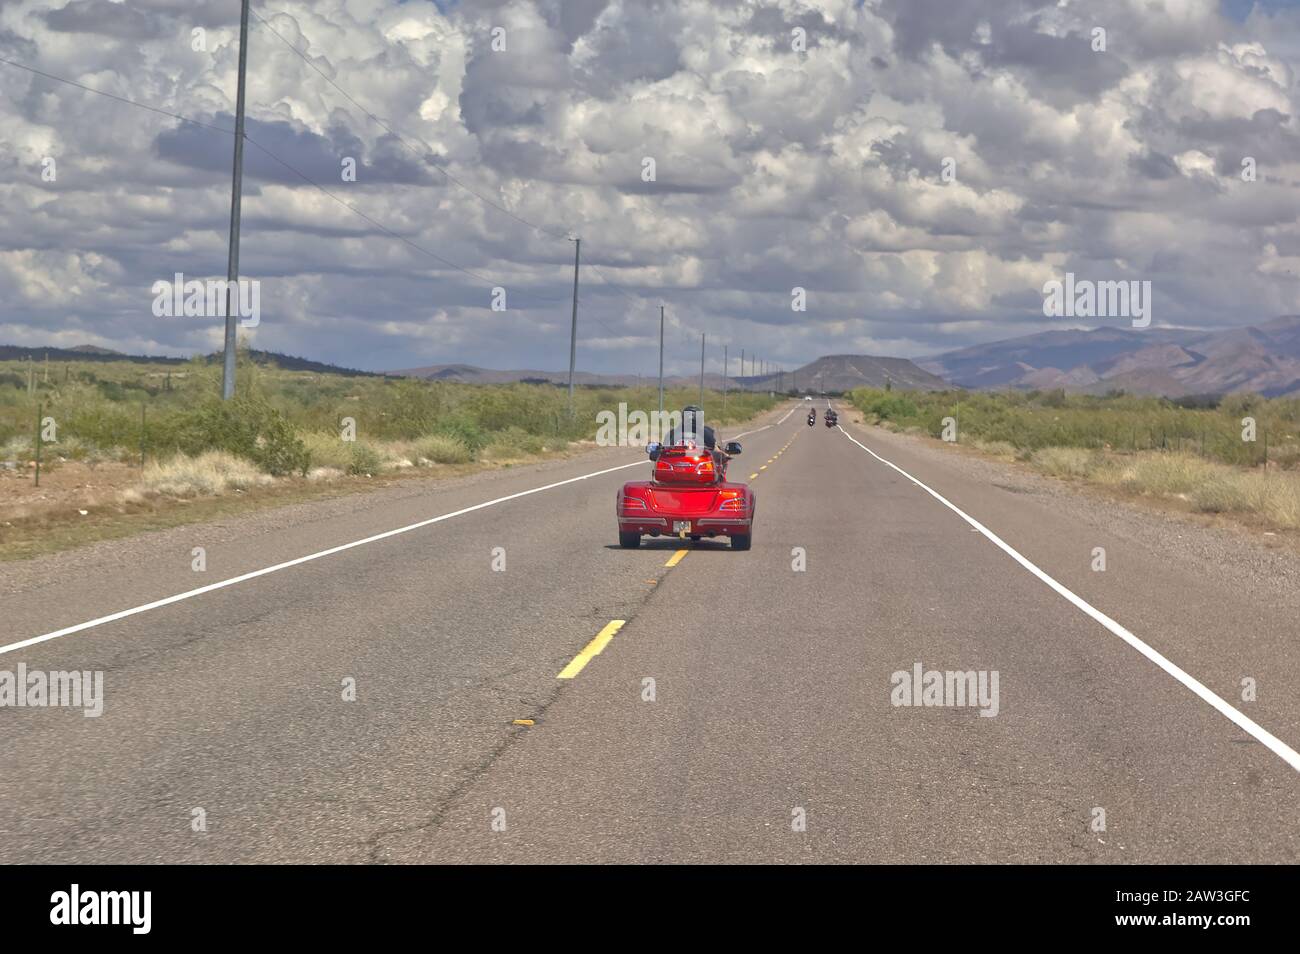 Ein Motorradfahrer auf einem 3-Rad-Rad, der die Mittellinie auf einer abgelegenen 2-spurigen Straße in der Nähe von New River Arizona entlang stredet. Dies wurde meinem Fahrzeug entnommen, während ich w Stockfoto